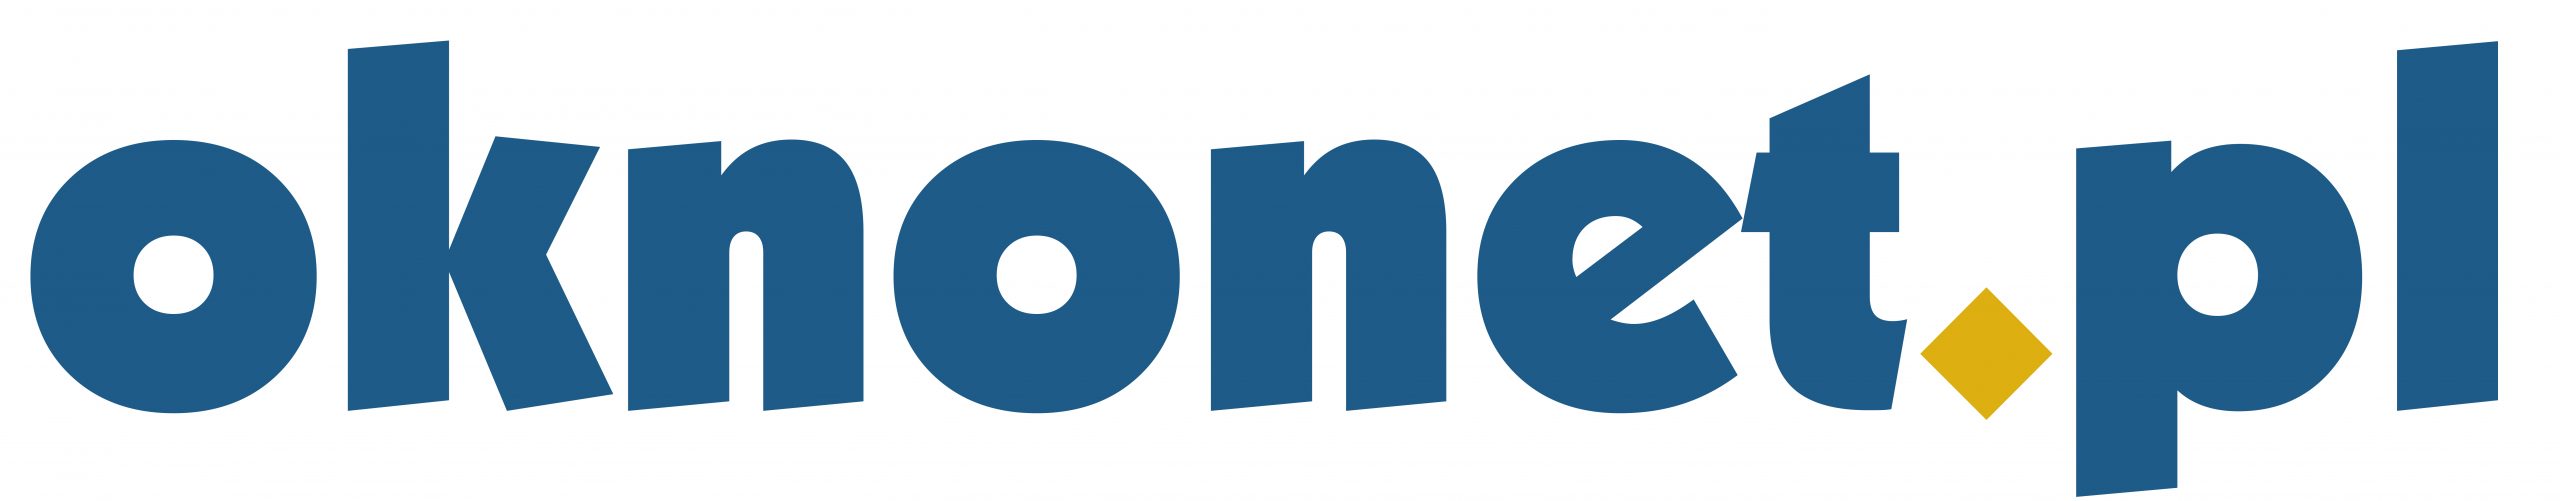 oknonet-logo